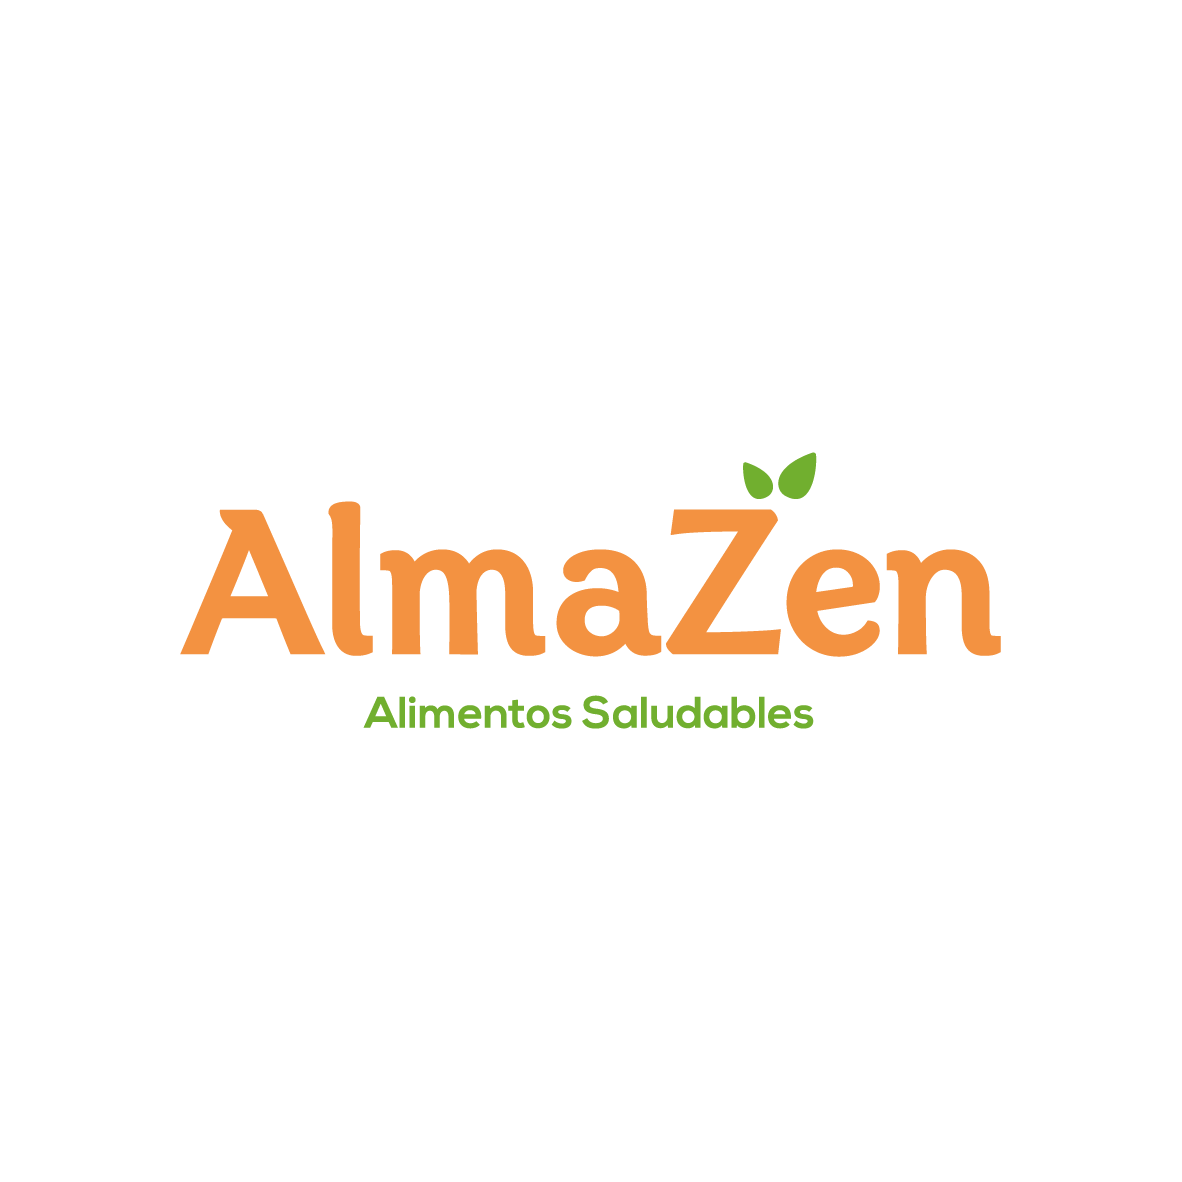 https://deliverygo.app/toojific/2021/01/Almazen.png